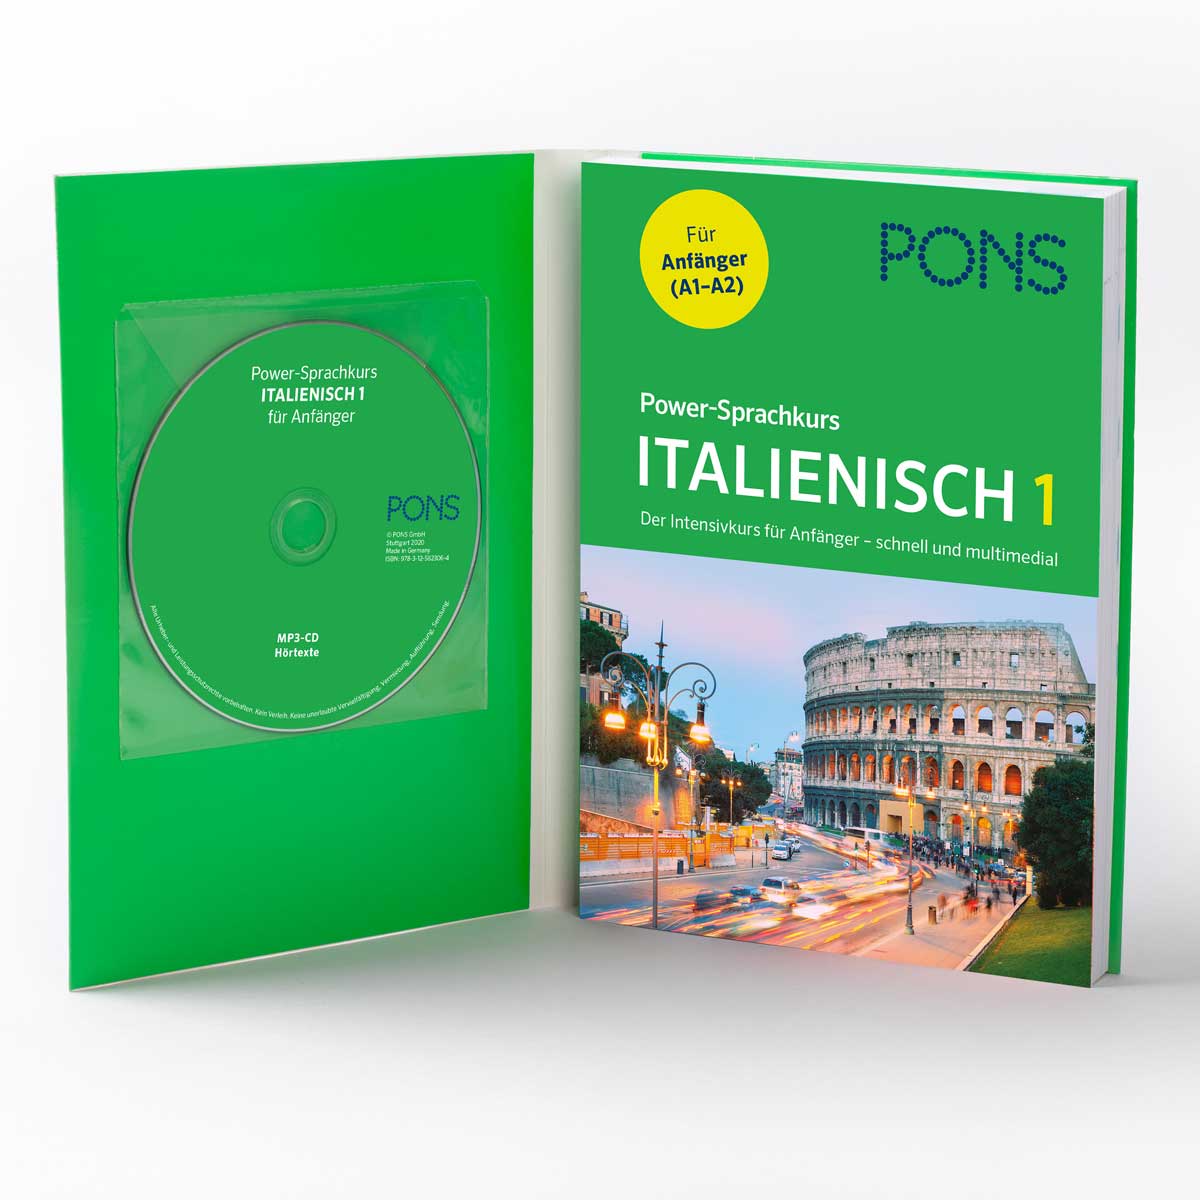 PONS Power Sprachkurs 1 Italienisch 1 | Letteratura e poesie